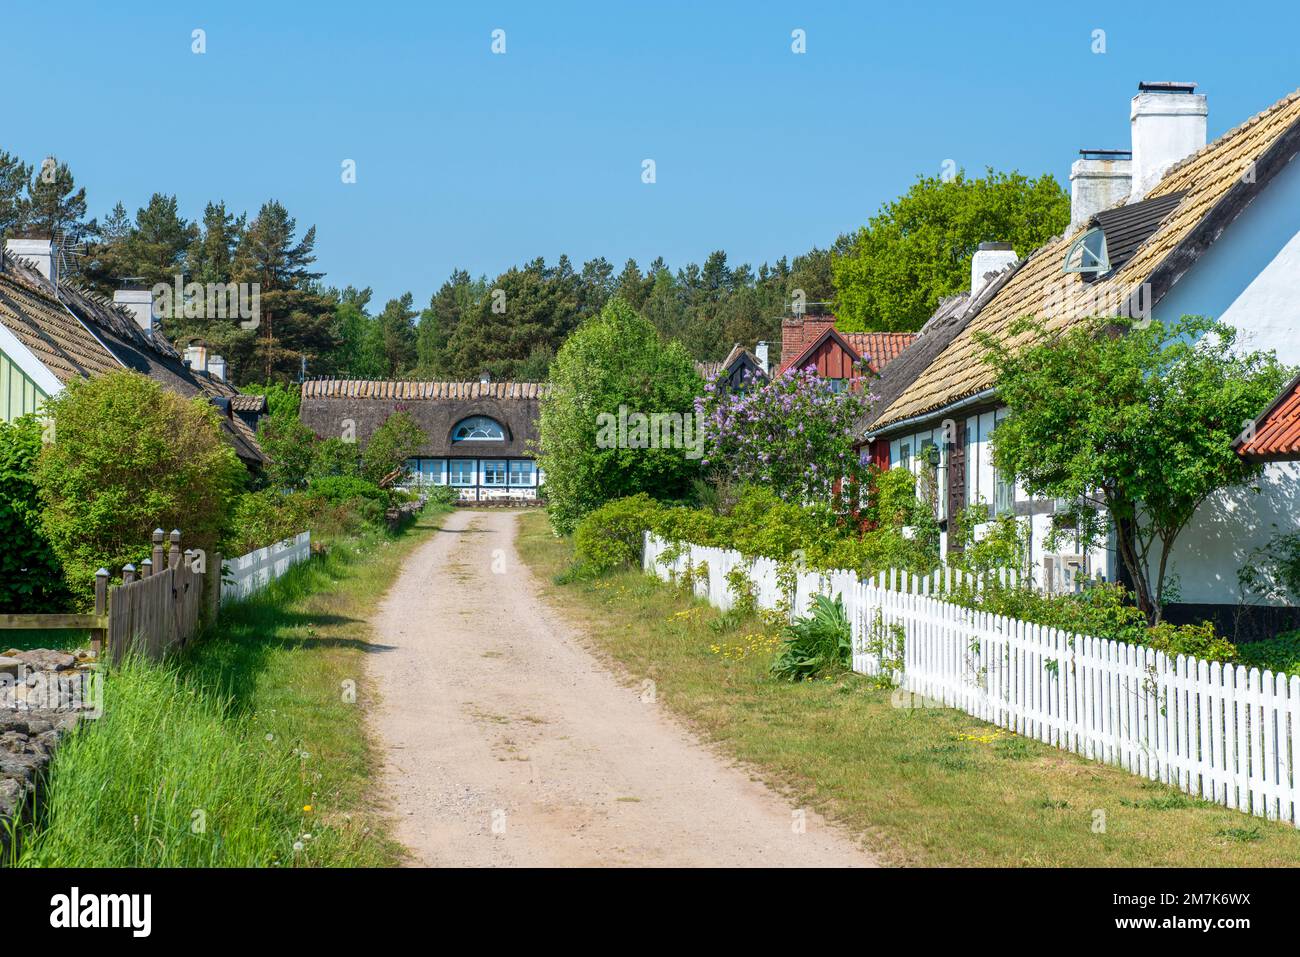 Typical houses in the small village Knäbäckshusen, Österlen, Skåne, Sweden Stock Photo